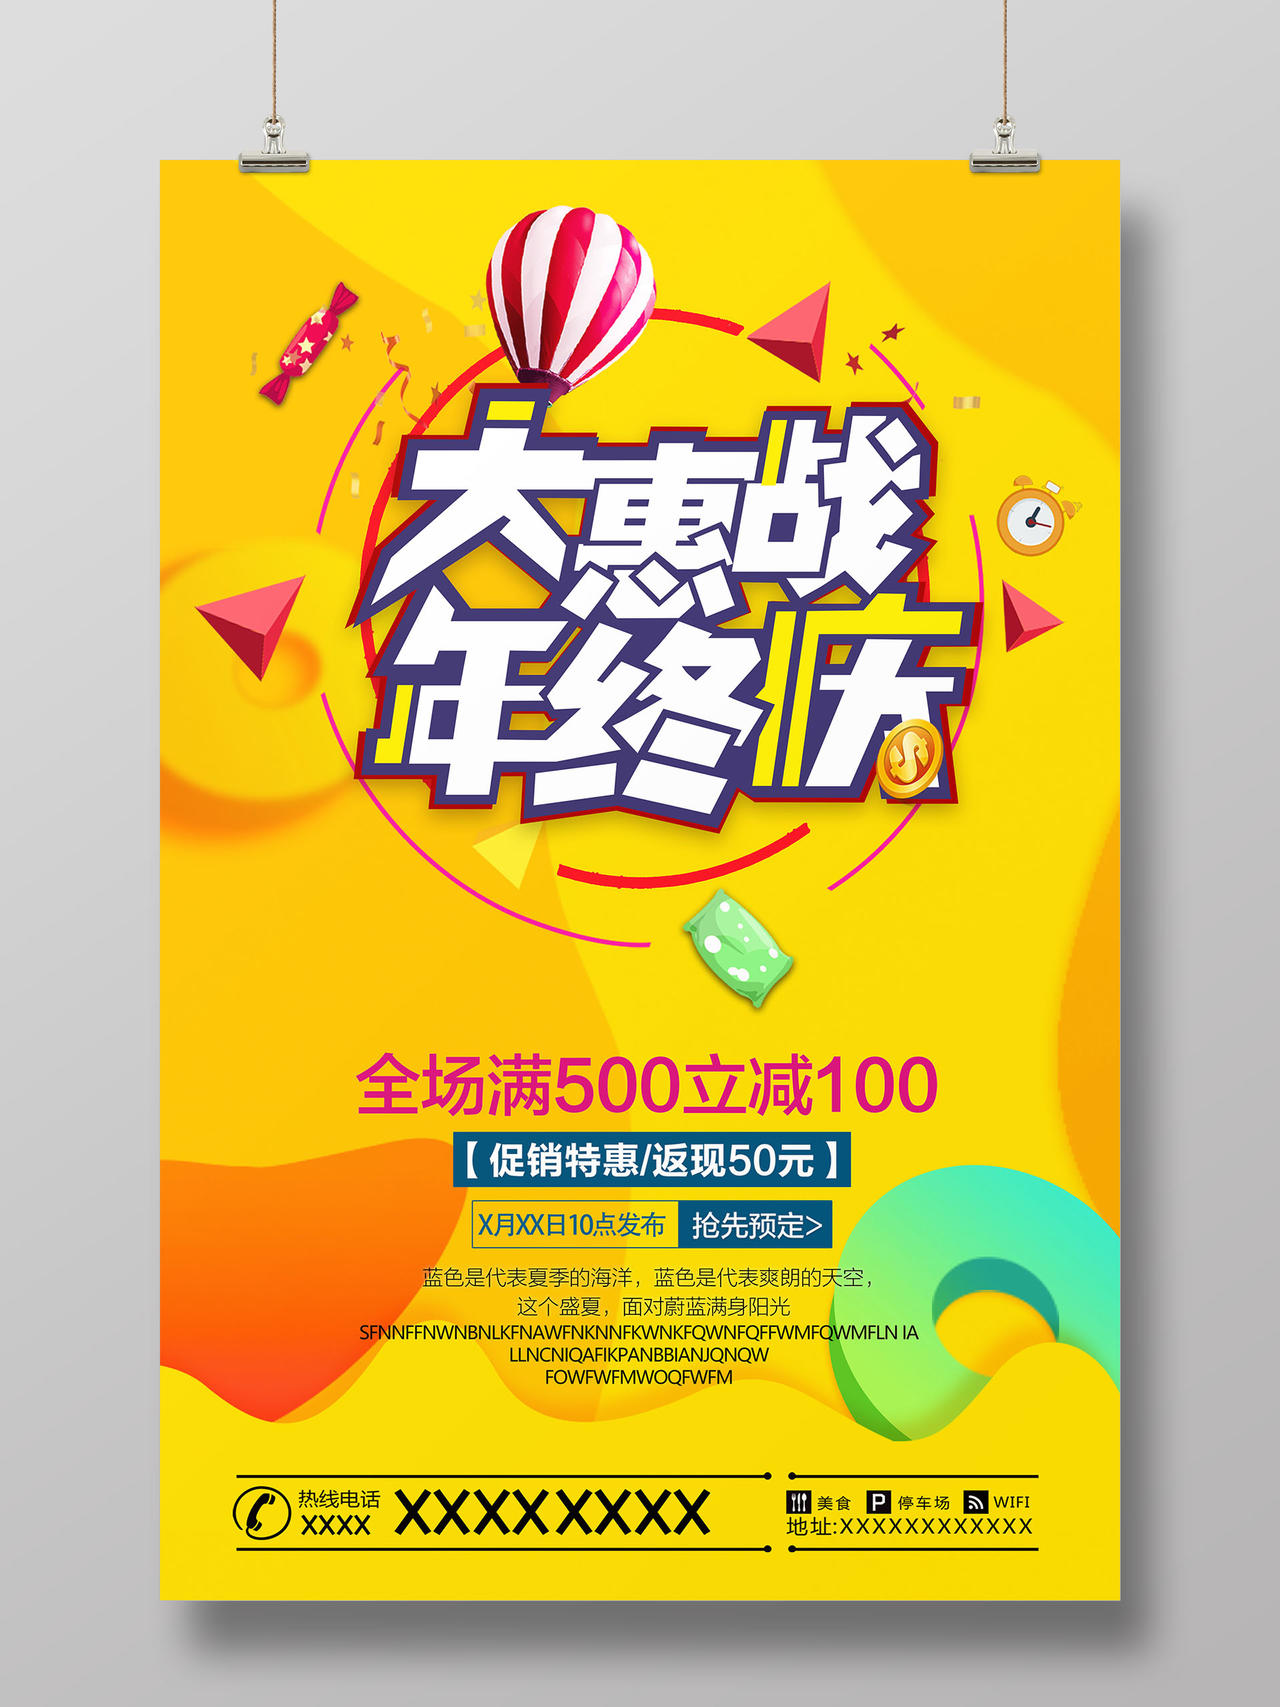 黄色动感风格大惠战年终庆促销宣传海报图片素材免费下载